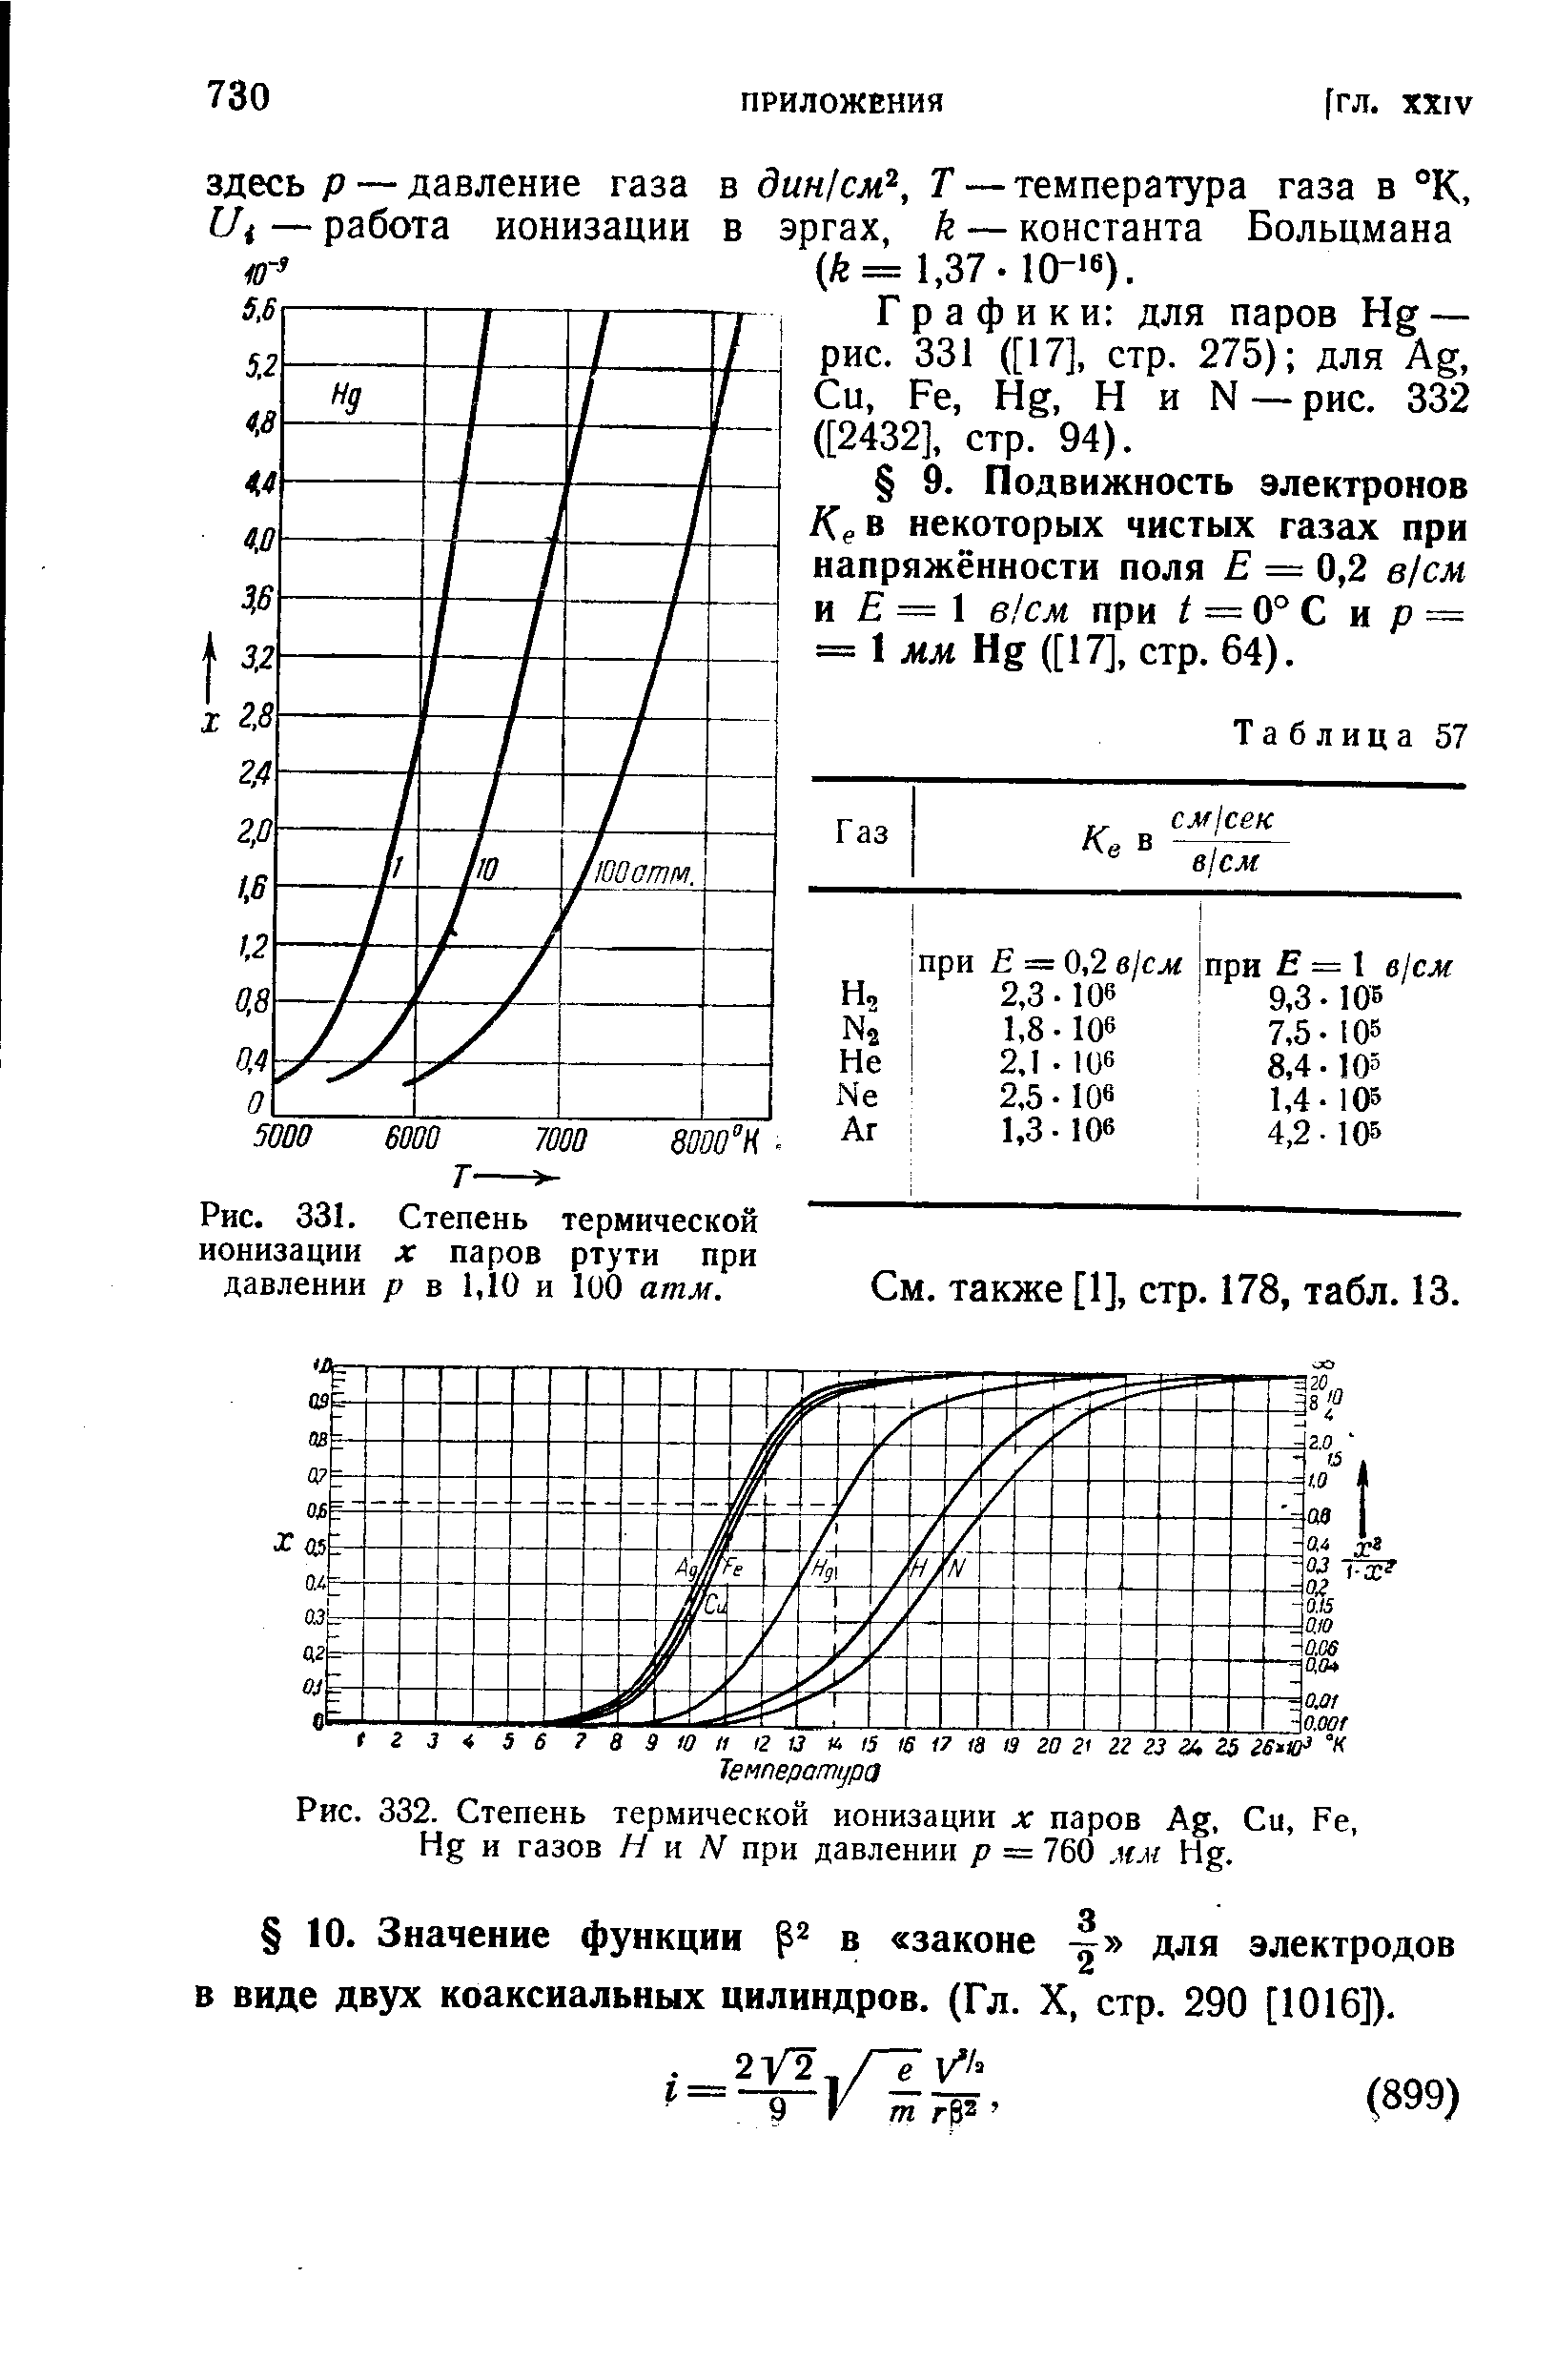 Графики для паров Нд — рис. 331 ([17], стр. 275) для Ад, Си, Ре, Нд, Н и Ы —рис. 332 ([2432], стр. 94).